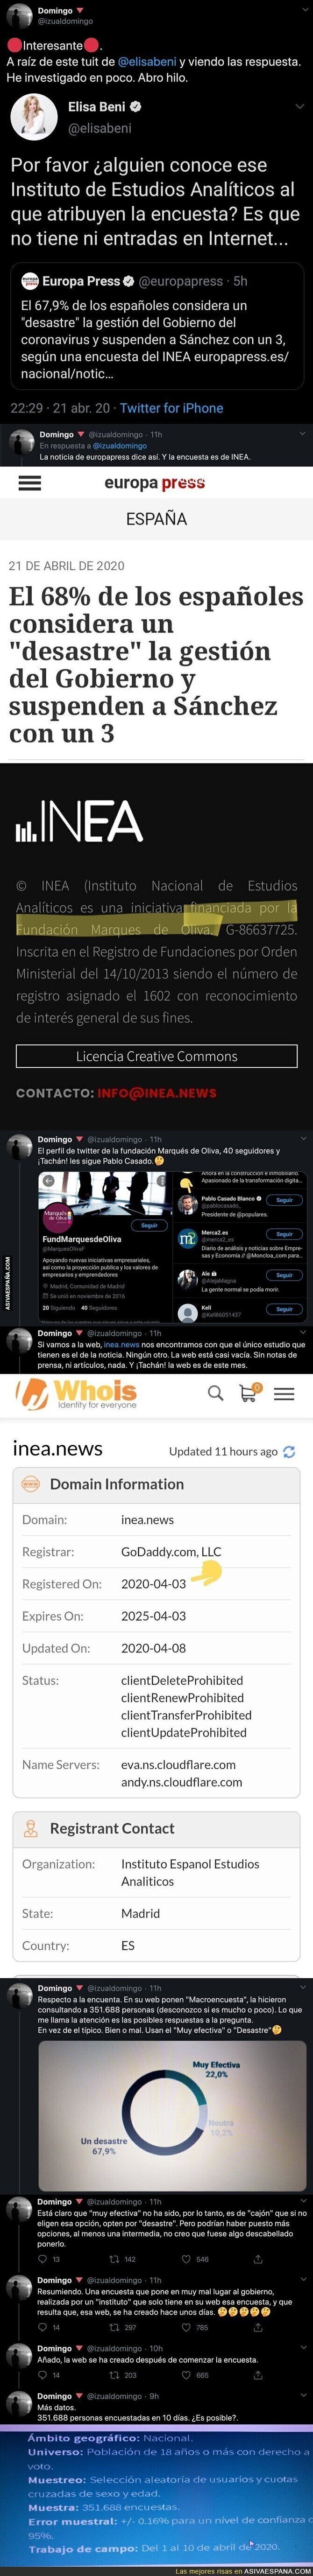 La sospechosa encuesta que suspende a Pedro Sánchez por la crisis del coronavirus que un usuario de Twitter ha sacado quien hay detrás